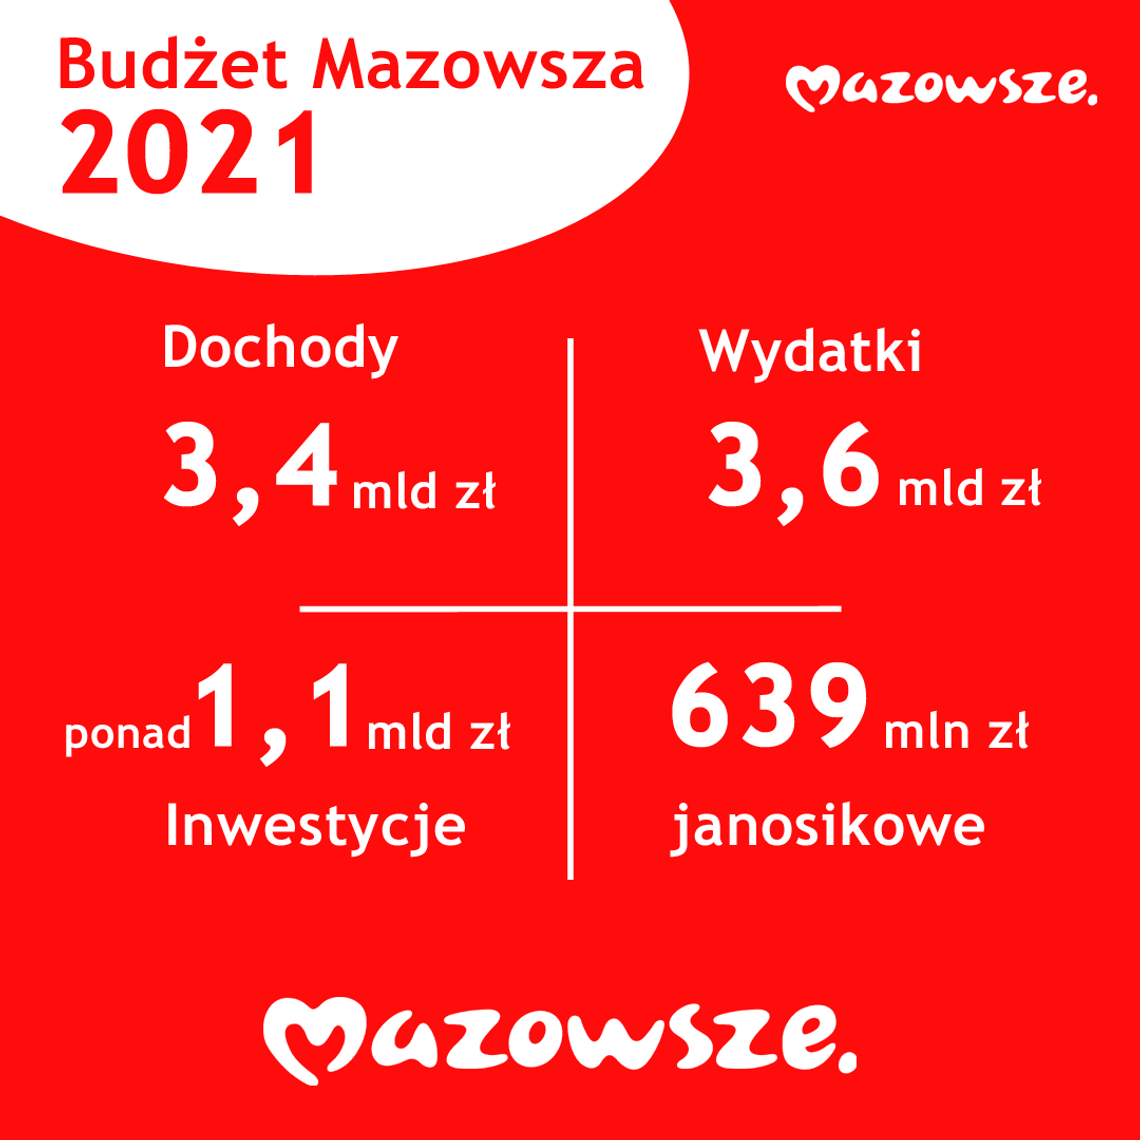 Ponad 1 mld zł na inwestycje w 2021 - 7 Dni na Mazowszu